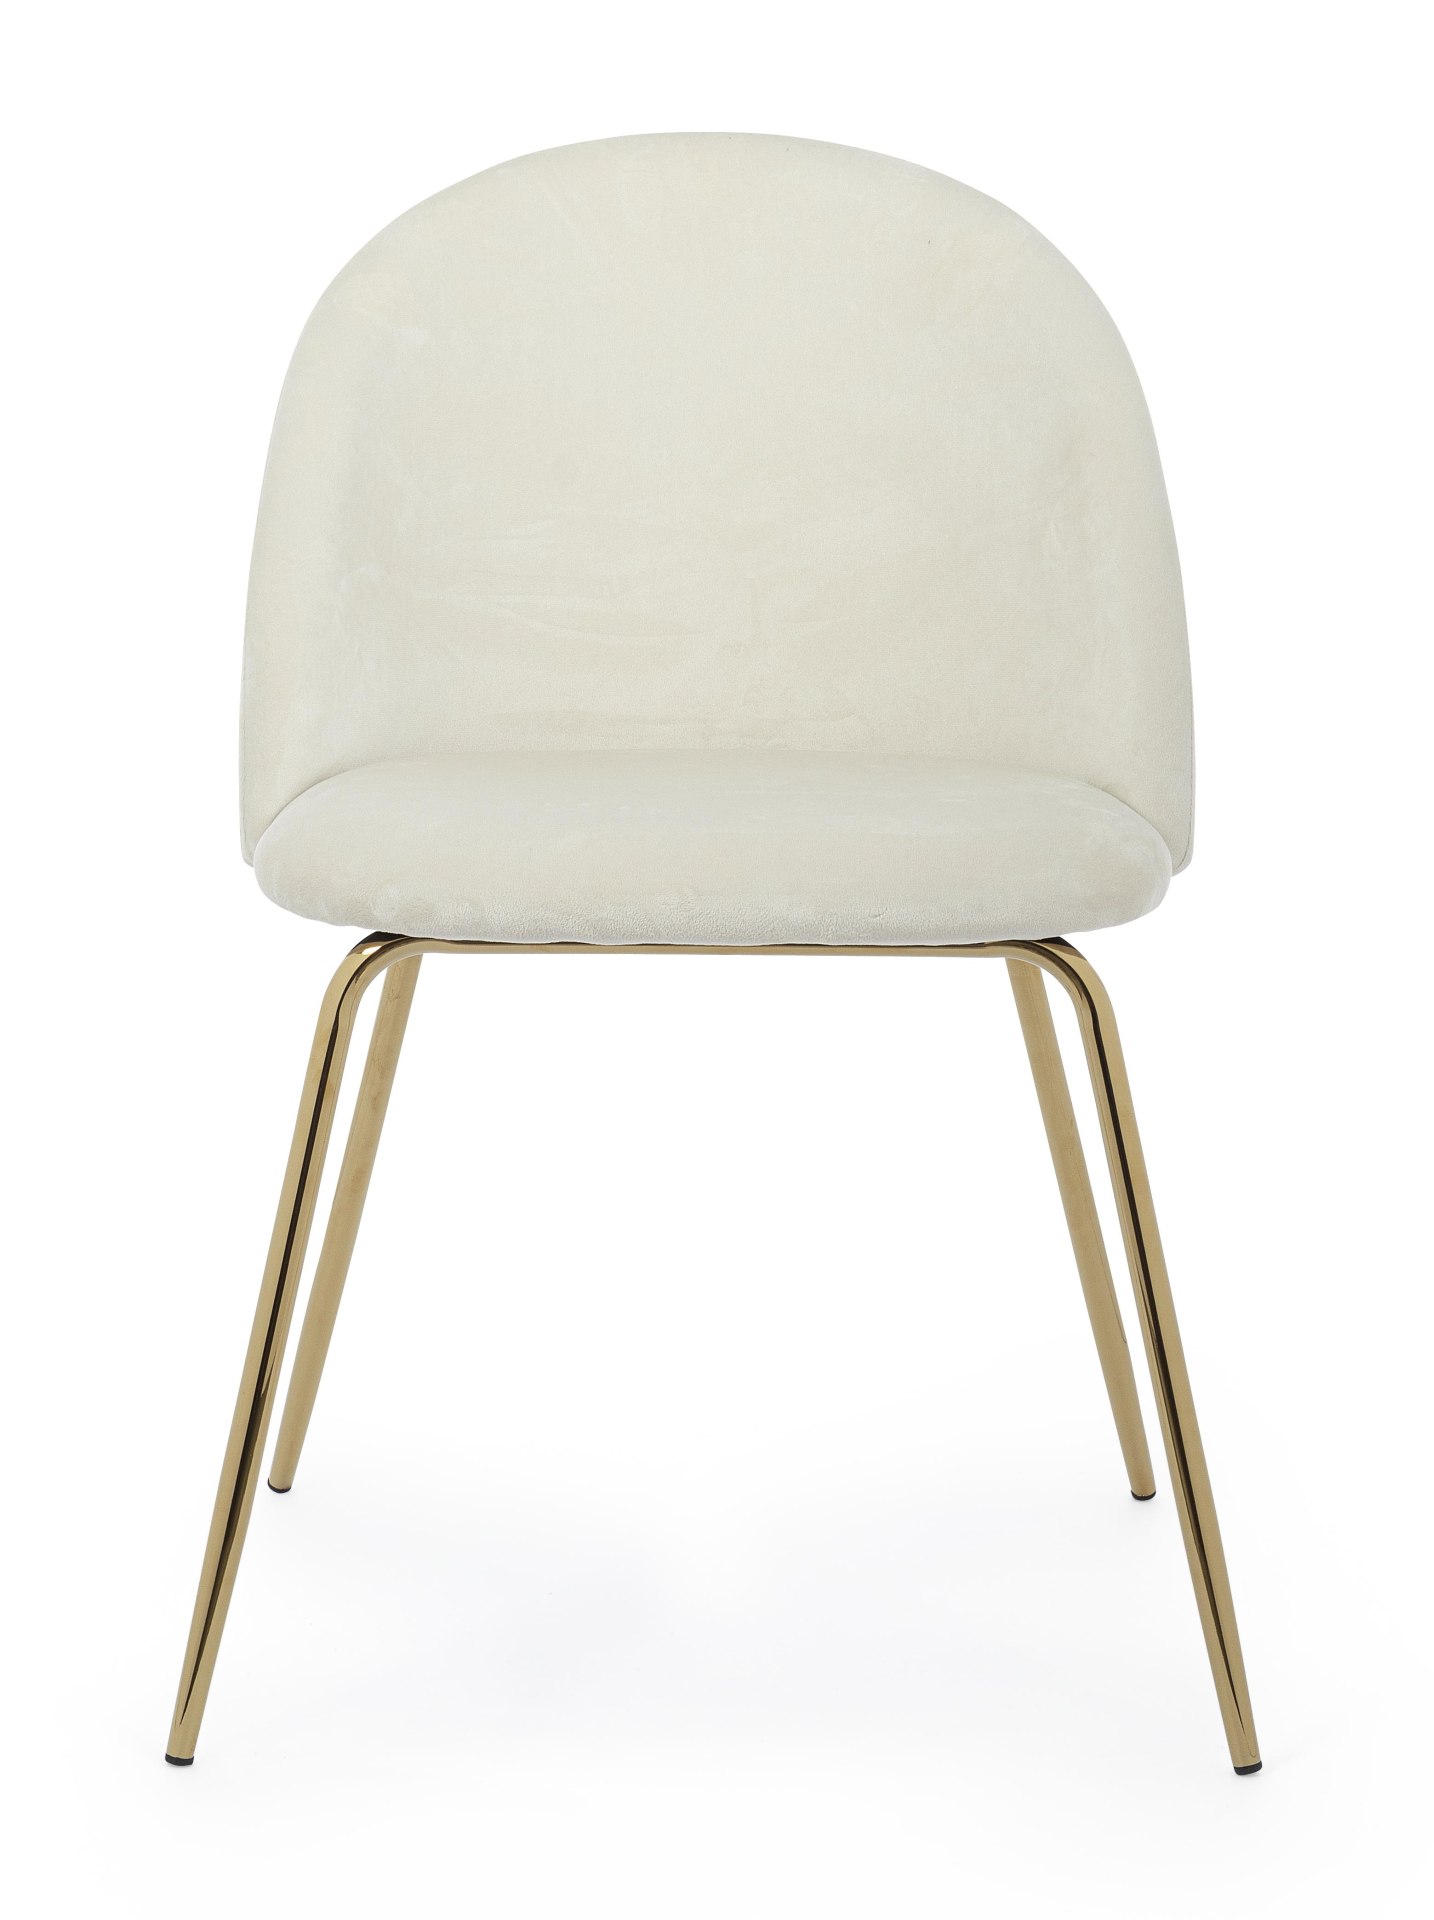 Der Esszimmerstuhl Tania überzeugt mit seinem modernem Design. Gefertigt wurde der Stuhl aus einem Samt-Bezug, welcher einen weißen Farbton besitzt. Das Gestell ist aus Metall und ist in einem goldenem Farbton. Die Sitzhöhe beträgt 46 cm.